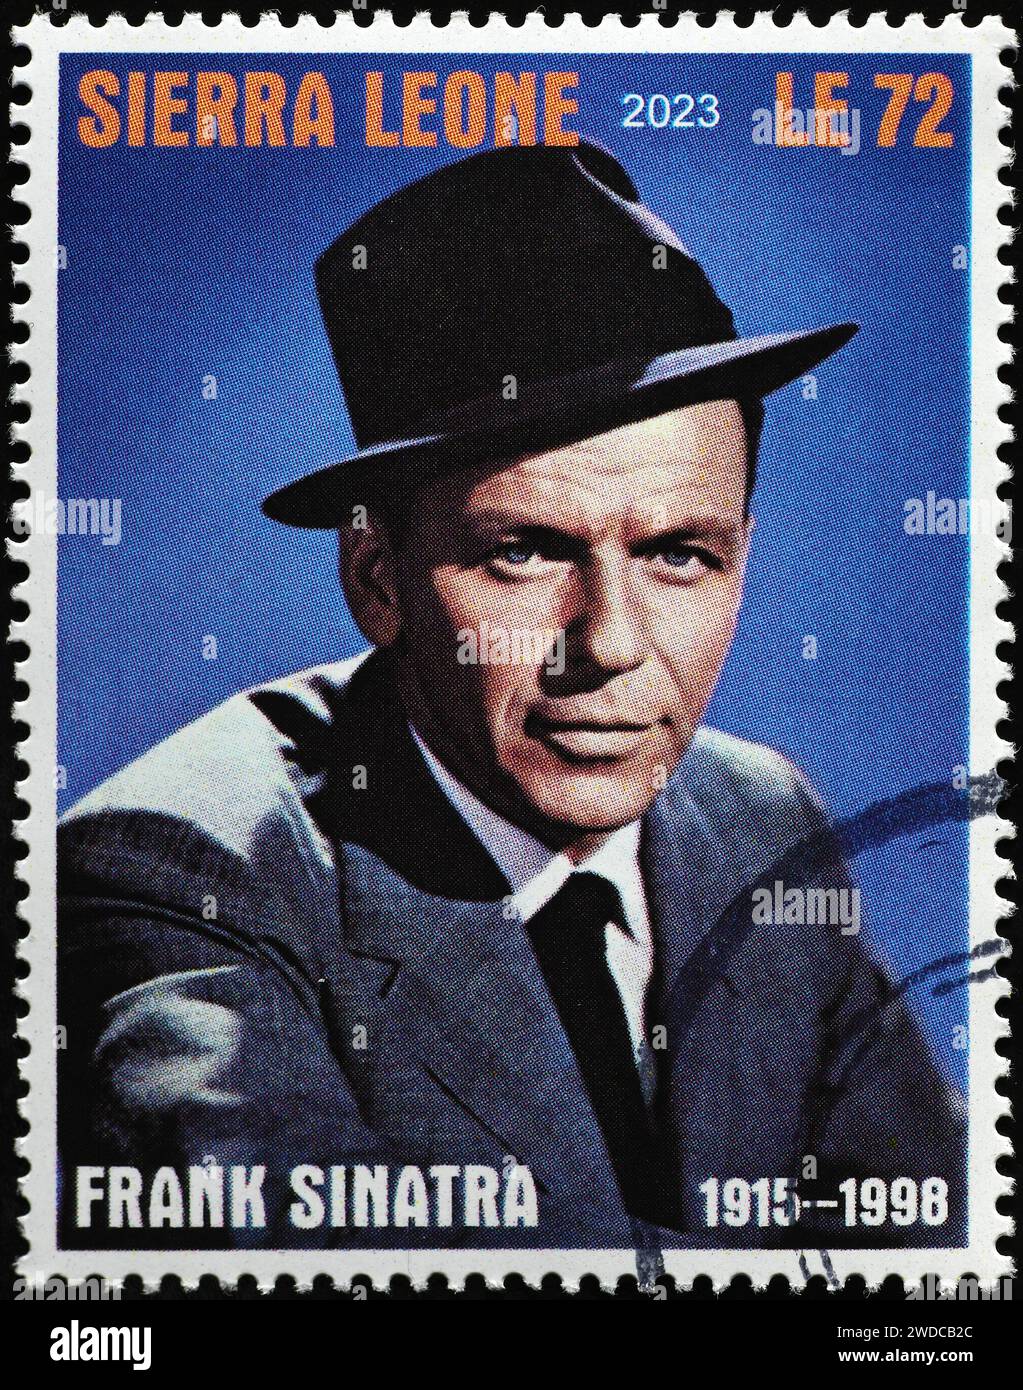 Frank Sinatra sul francobollo della Sierra Leone Foto Stock